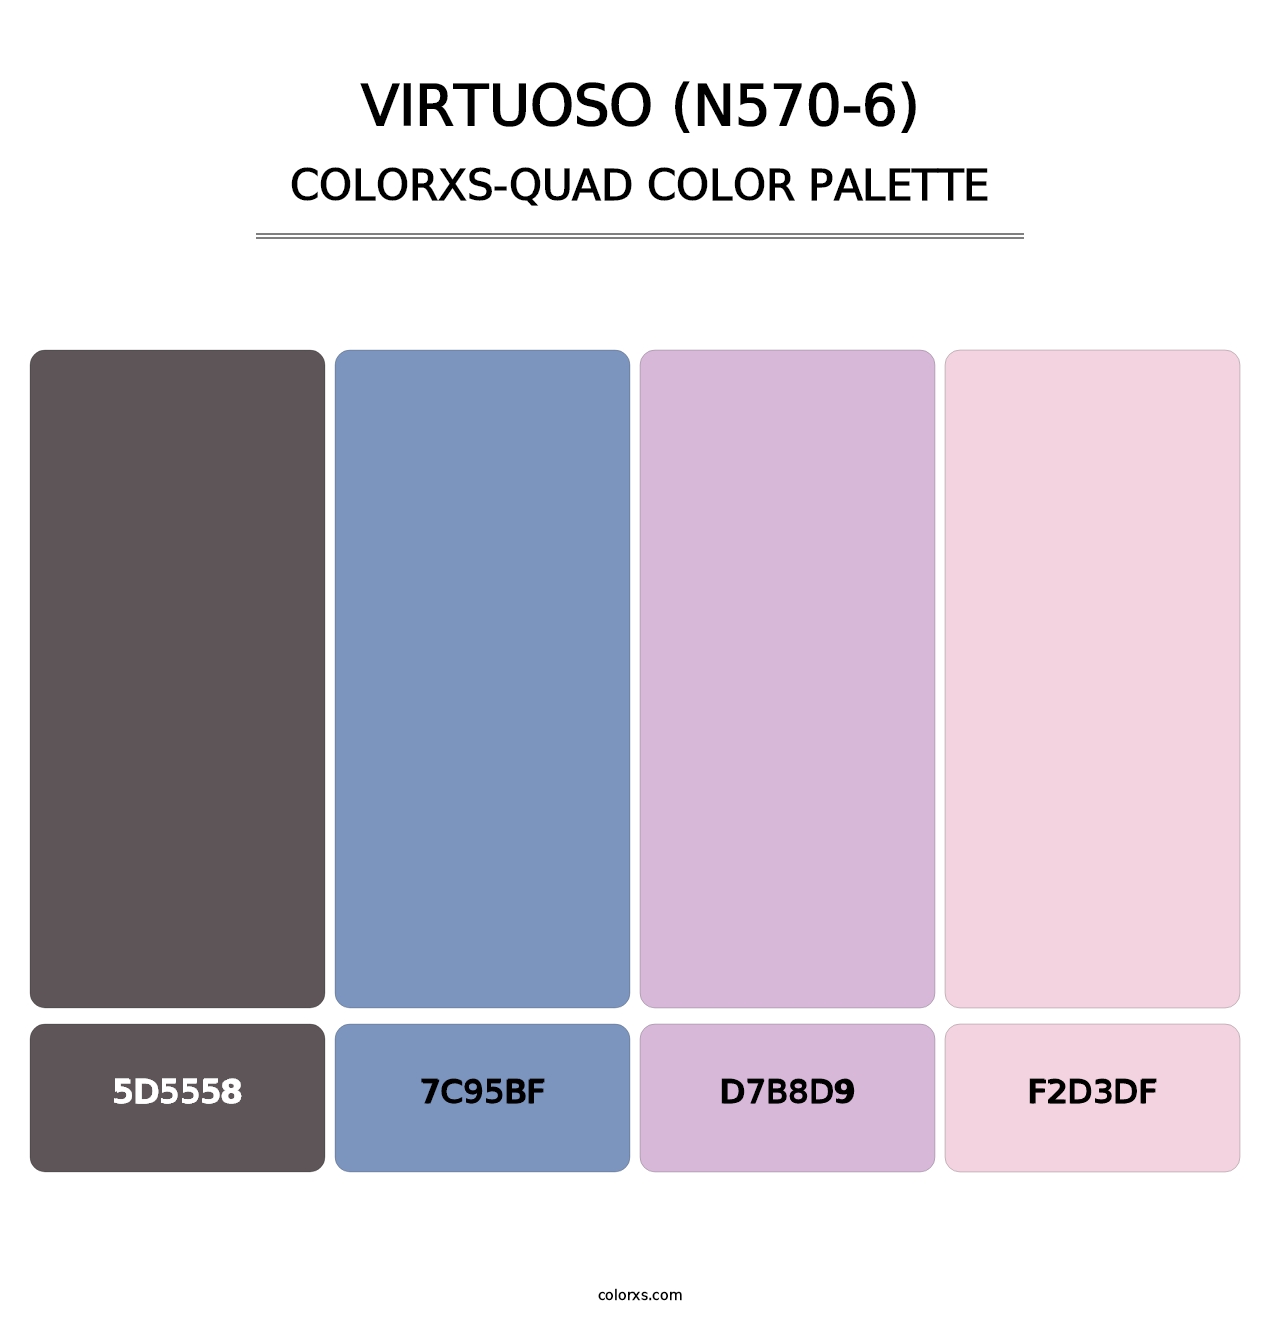 Virtuoso (N570-6) - Colorxs Quad Palette